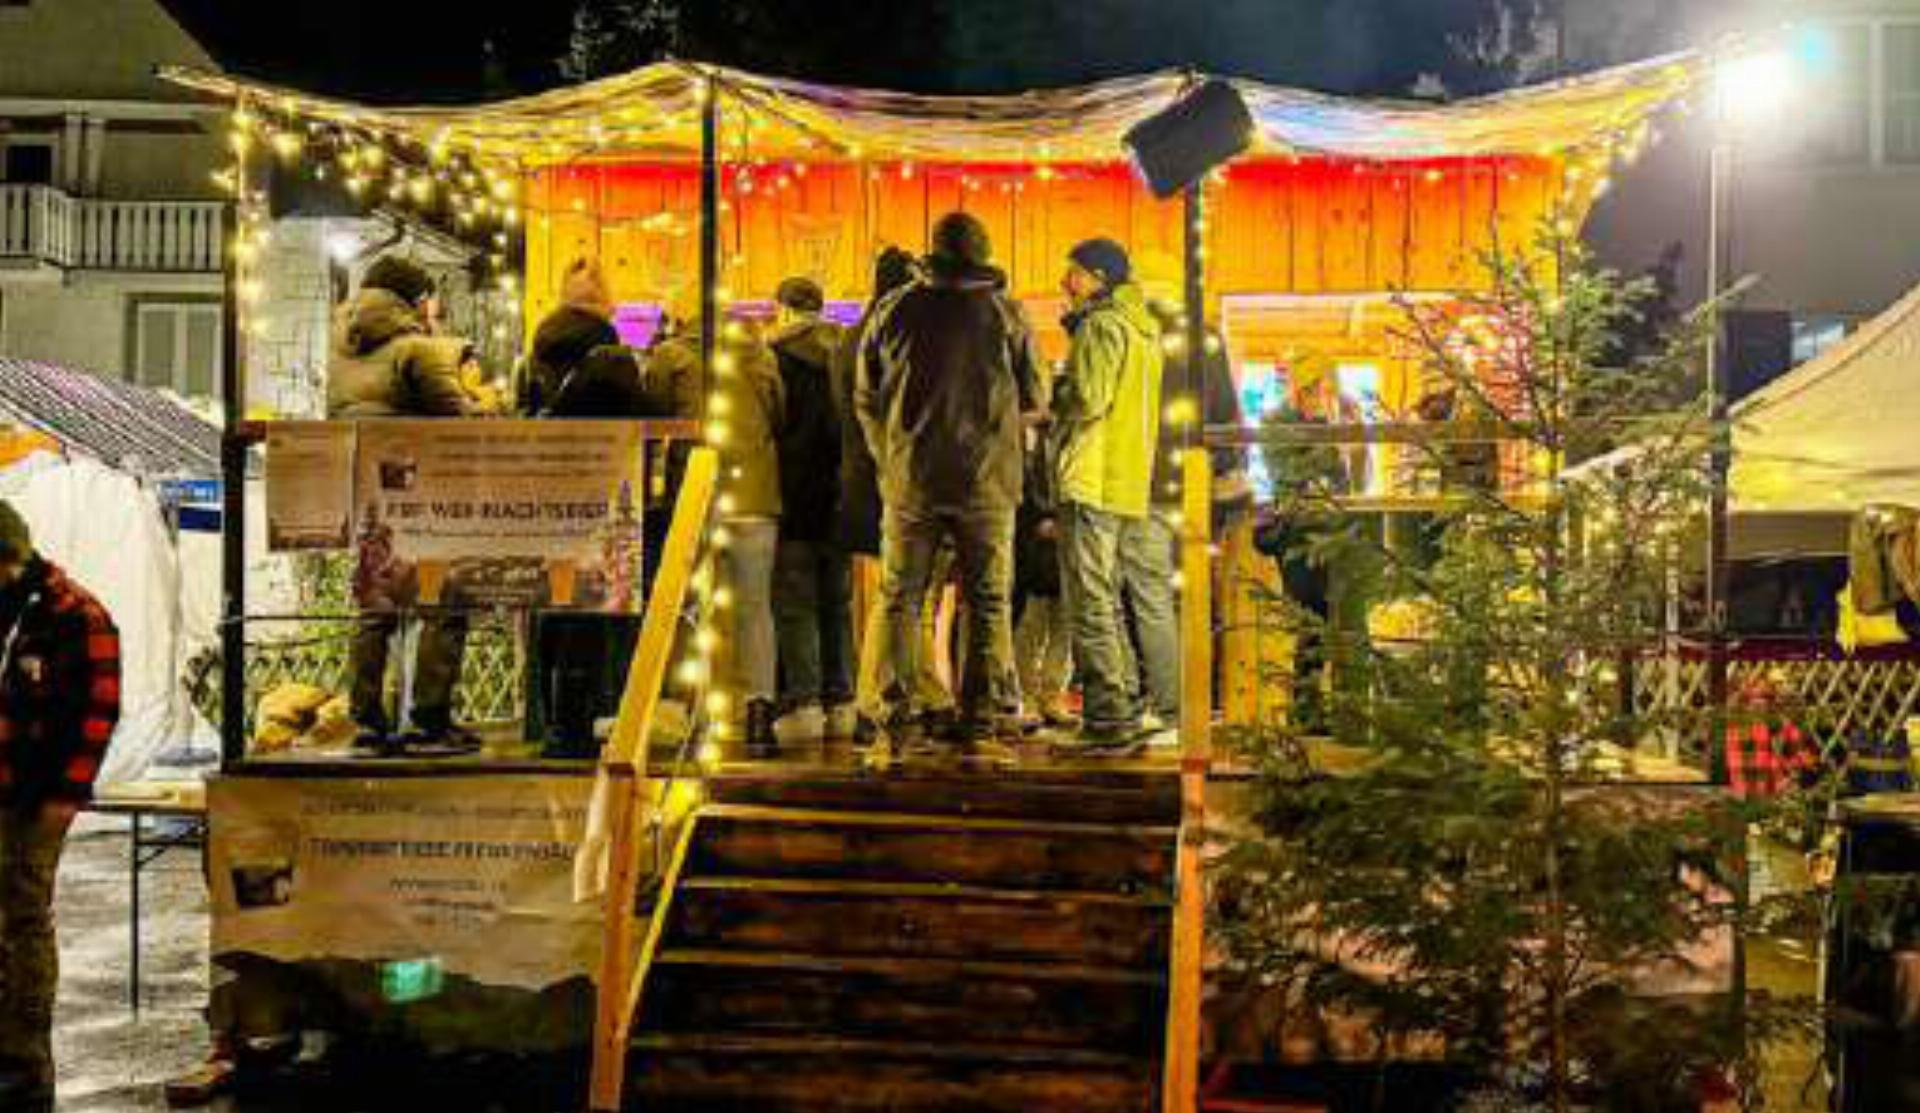 Bei Weihnachtsbier, gebratener Wurst und wärmendem Feuer werden am FBF-Marktstand in Waldenburg spannende Themen diskutiert. Bild zvg